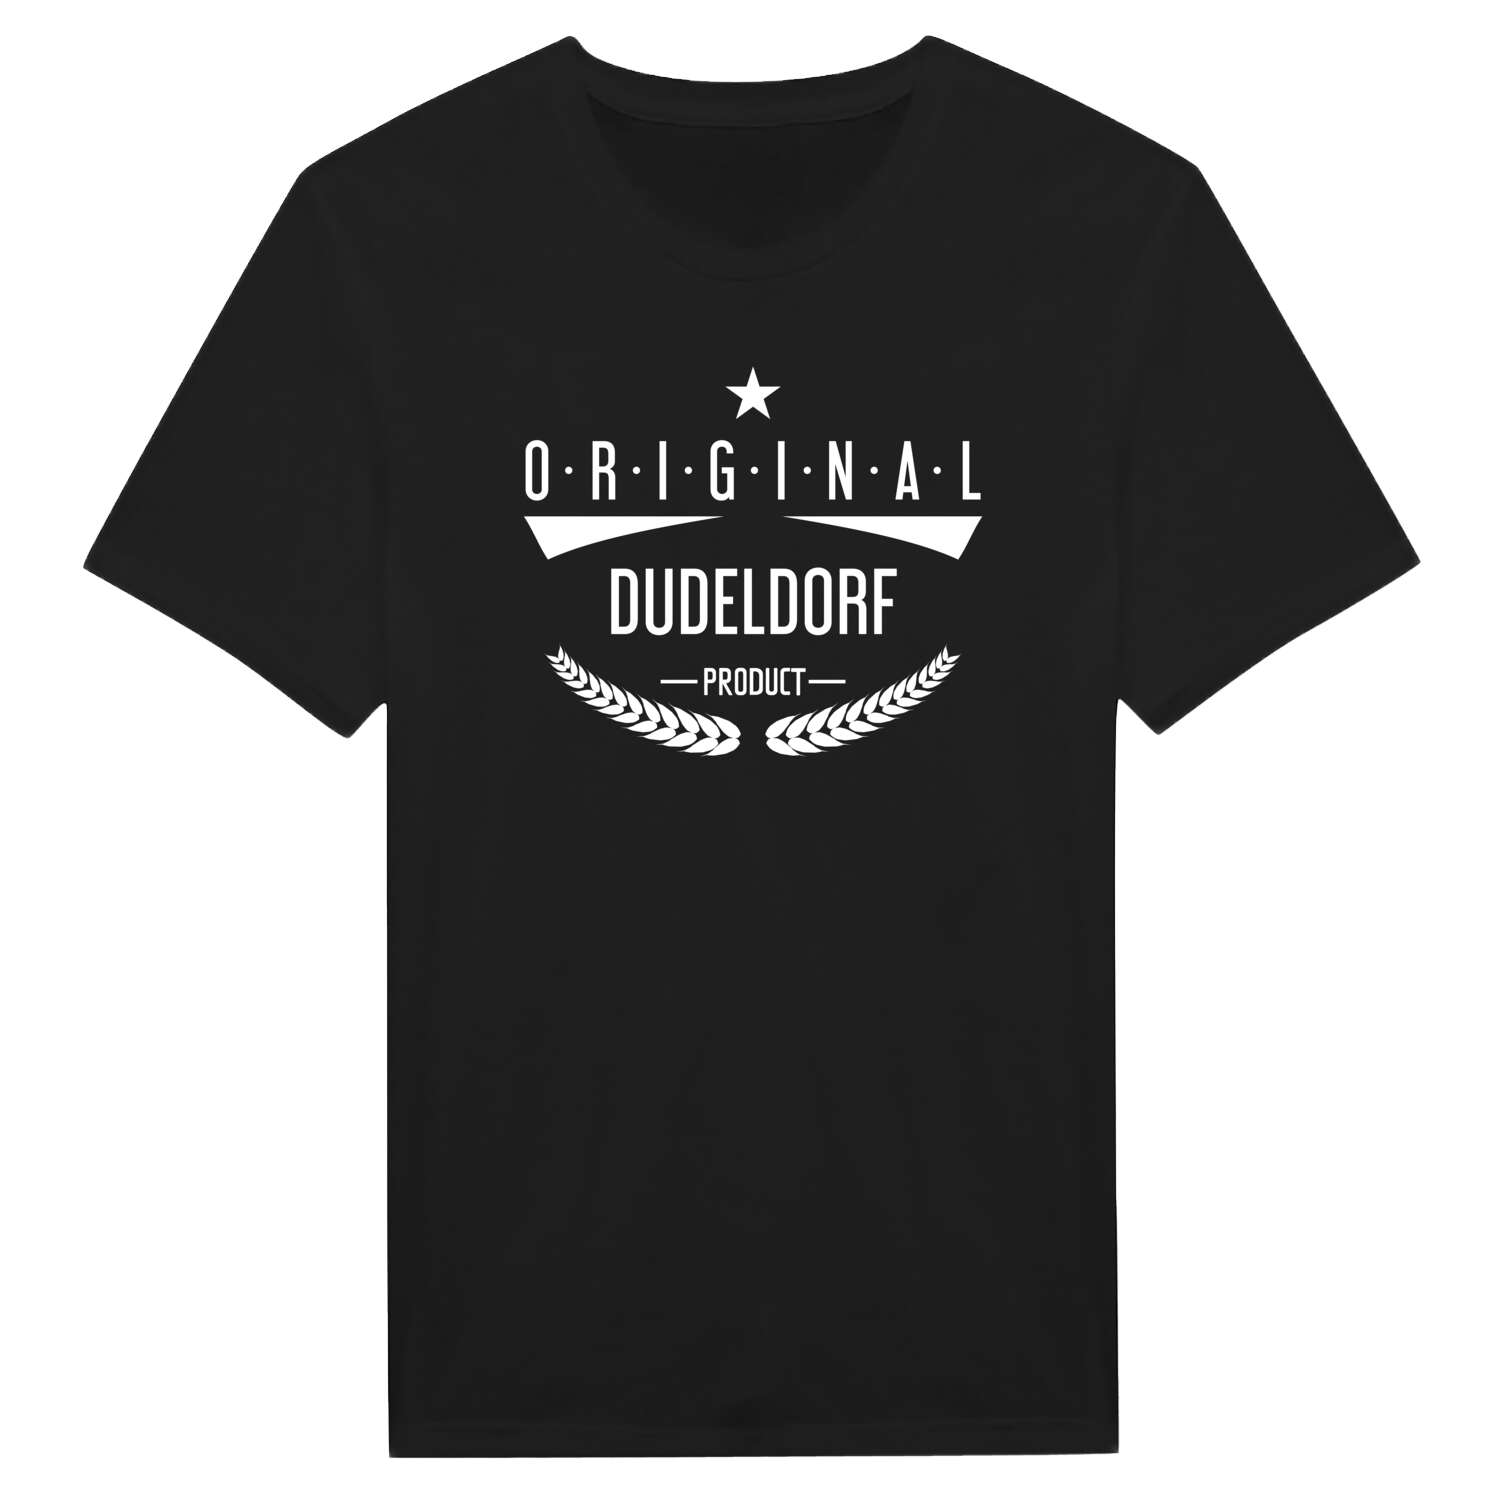 Dudeldorf T-Shirt »Original Product«